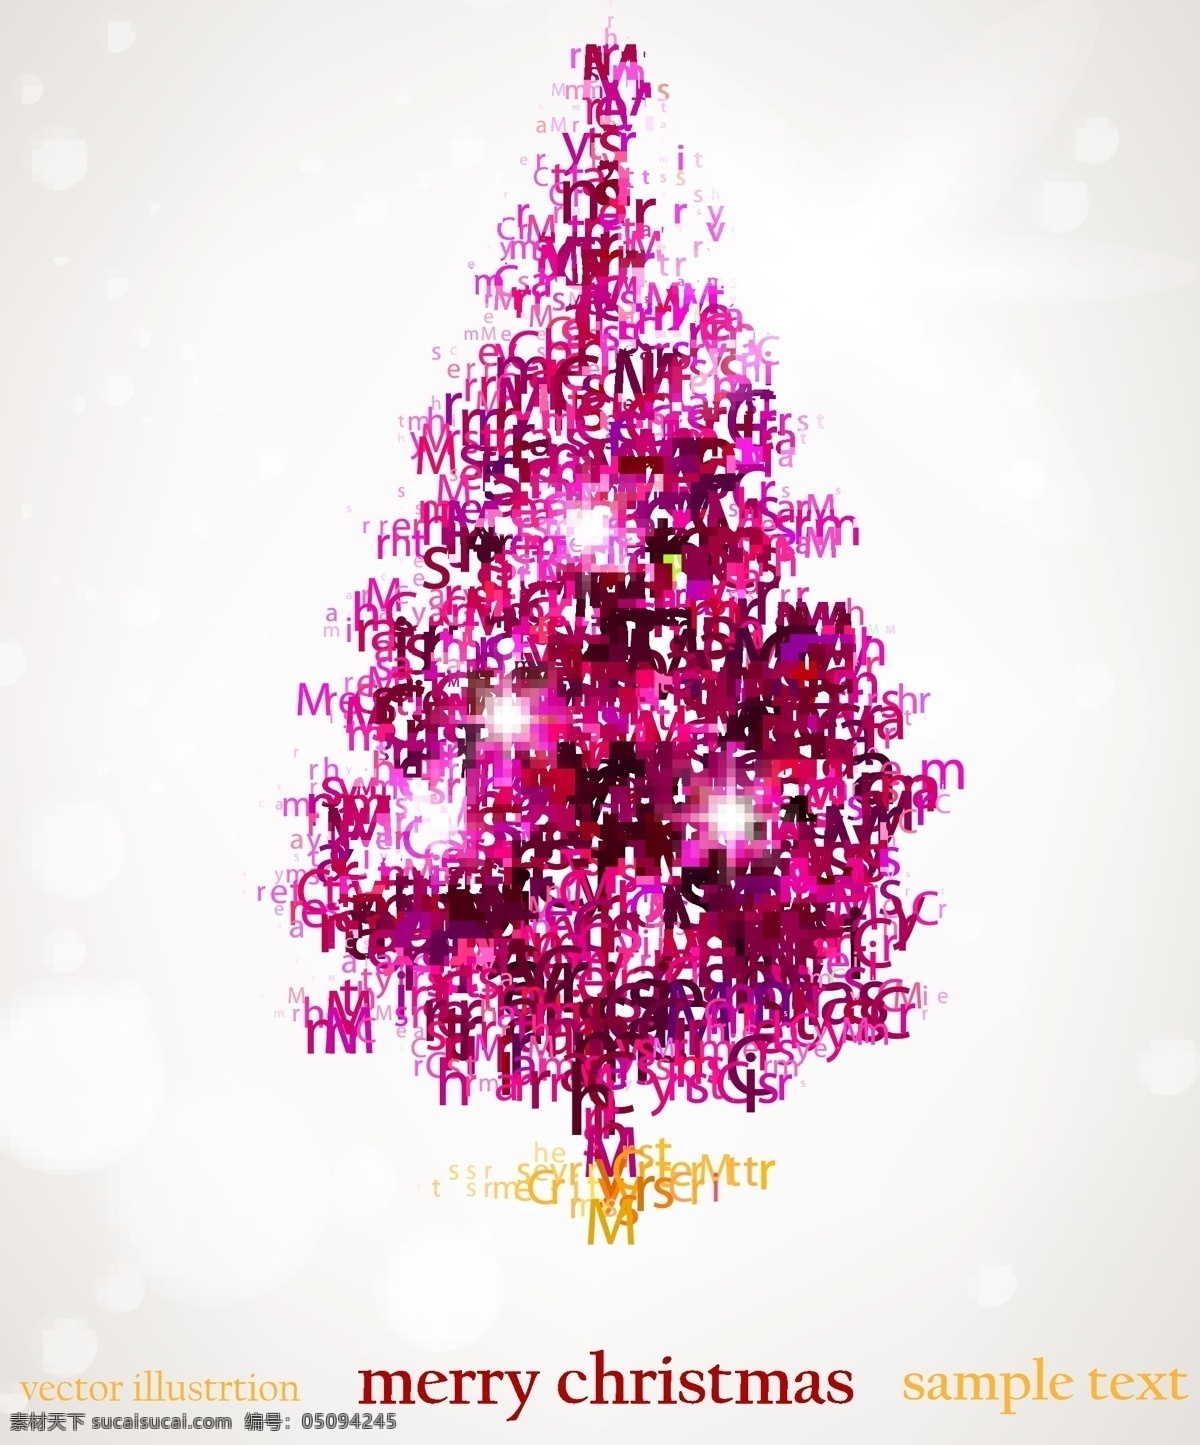 矢量 抽象 冰晶 雪花 背景 抽象圣诞树 底纹图片素材 冰晶雪花